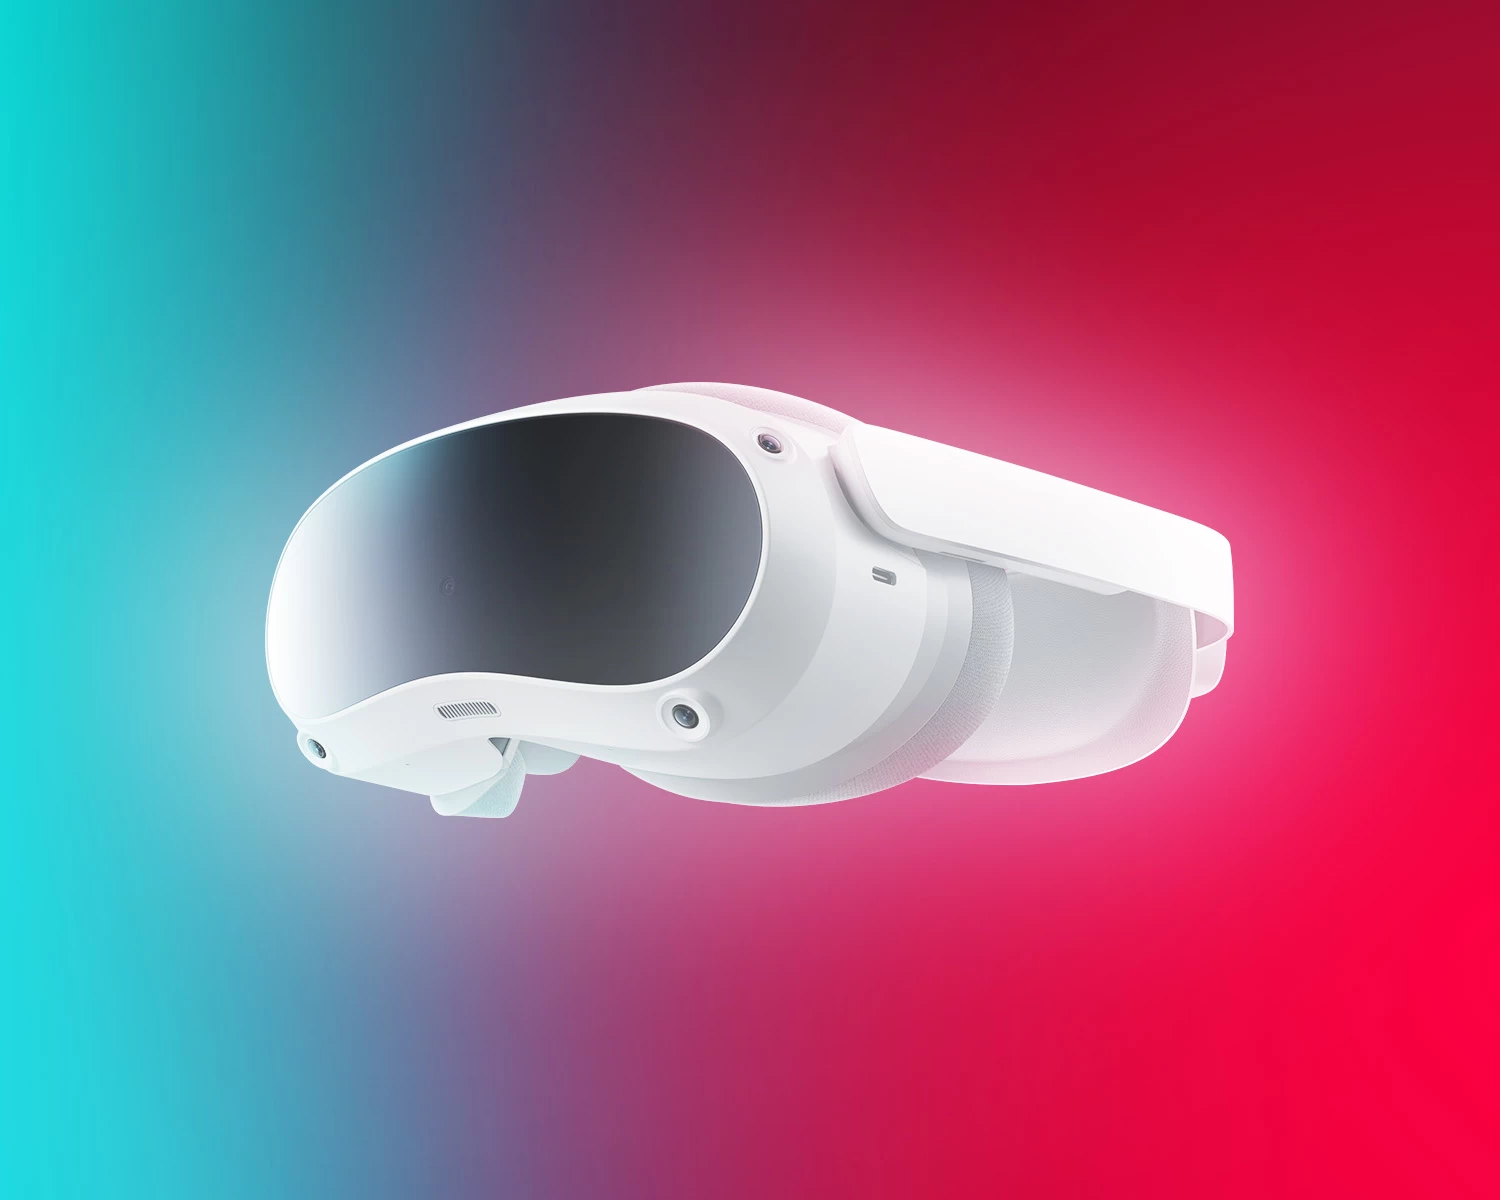 صورة تيك توك تلغي تطوير نظارة الواقع الافتراضي في مقابل مشروع أعلى طموحاً!